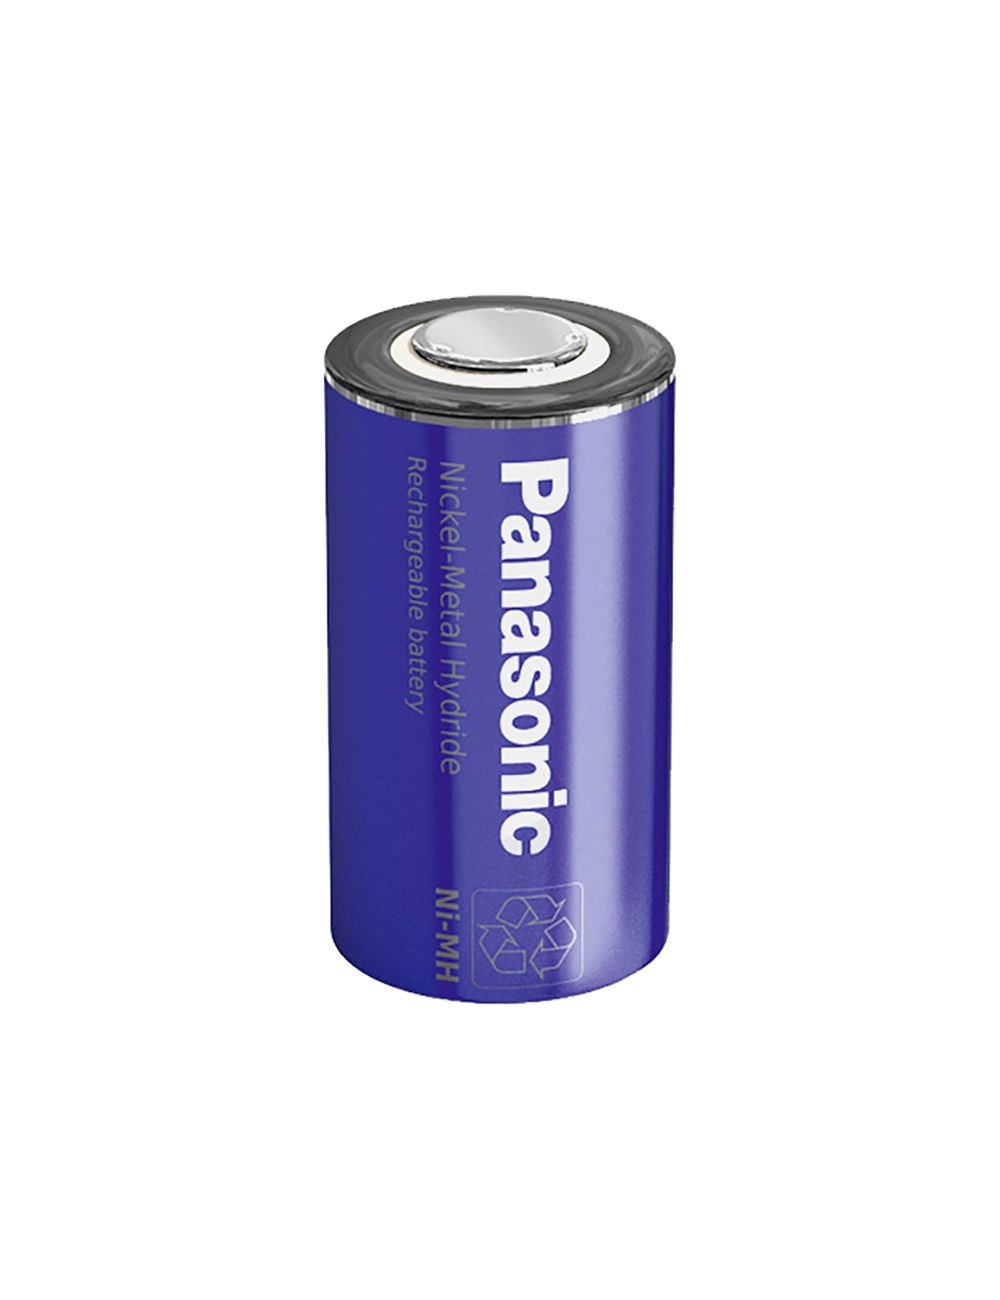 Batería SubC (Cs) 1,2V 3050mAh Ni-Mh Panasonic alta descarga y carga rápida - BK300SCP -  -  - 1